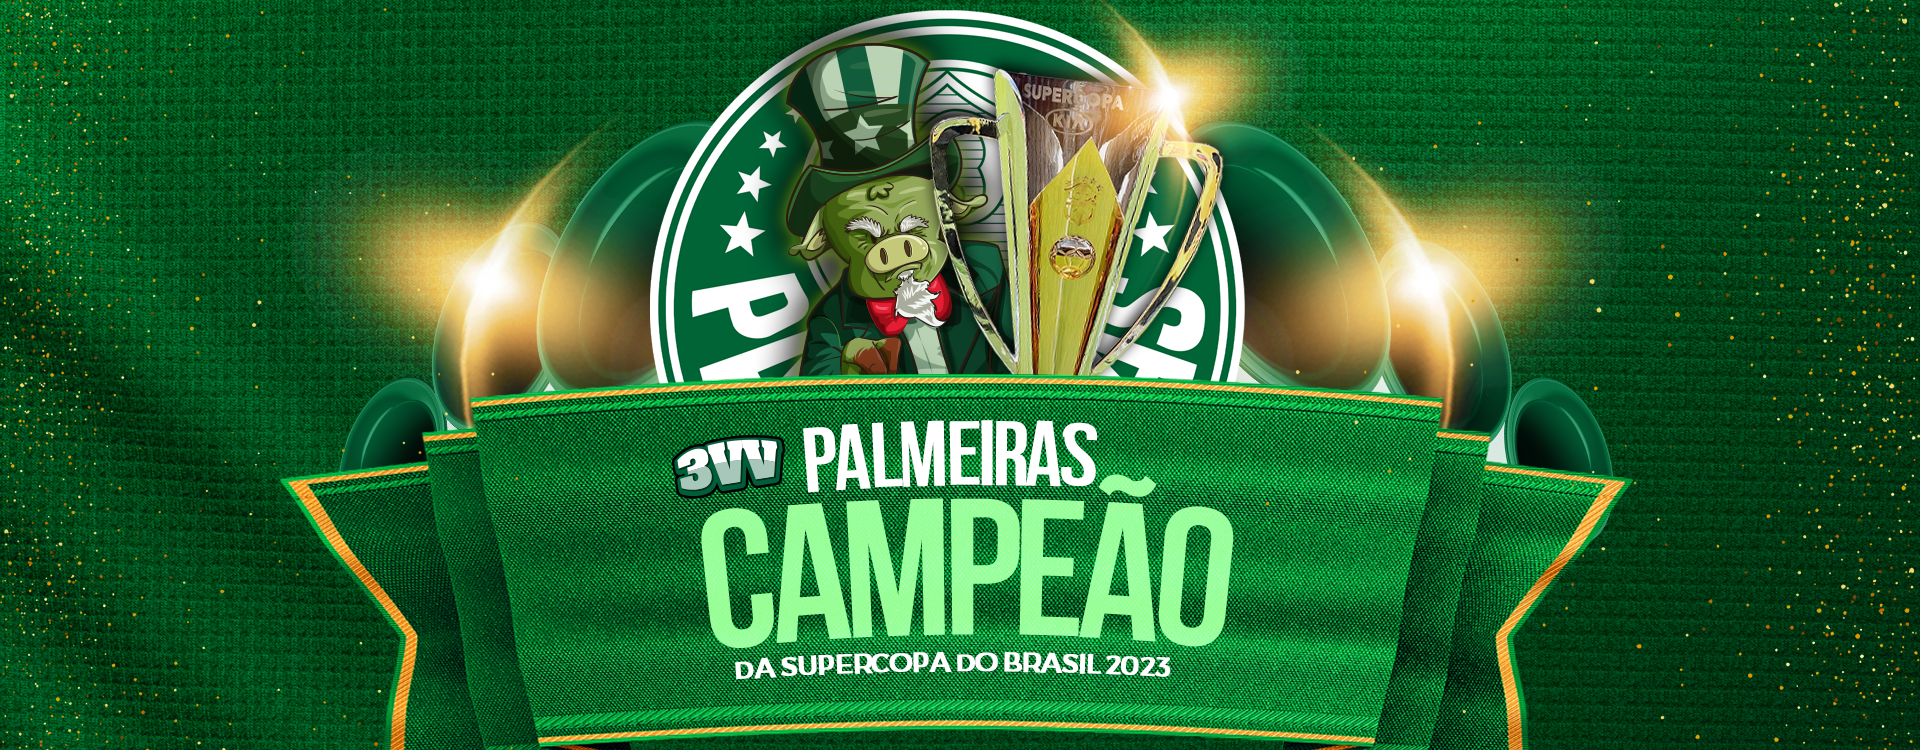 Palmeiras vence o Flamengo e conquista a Supercopa do Brasil 2023